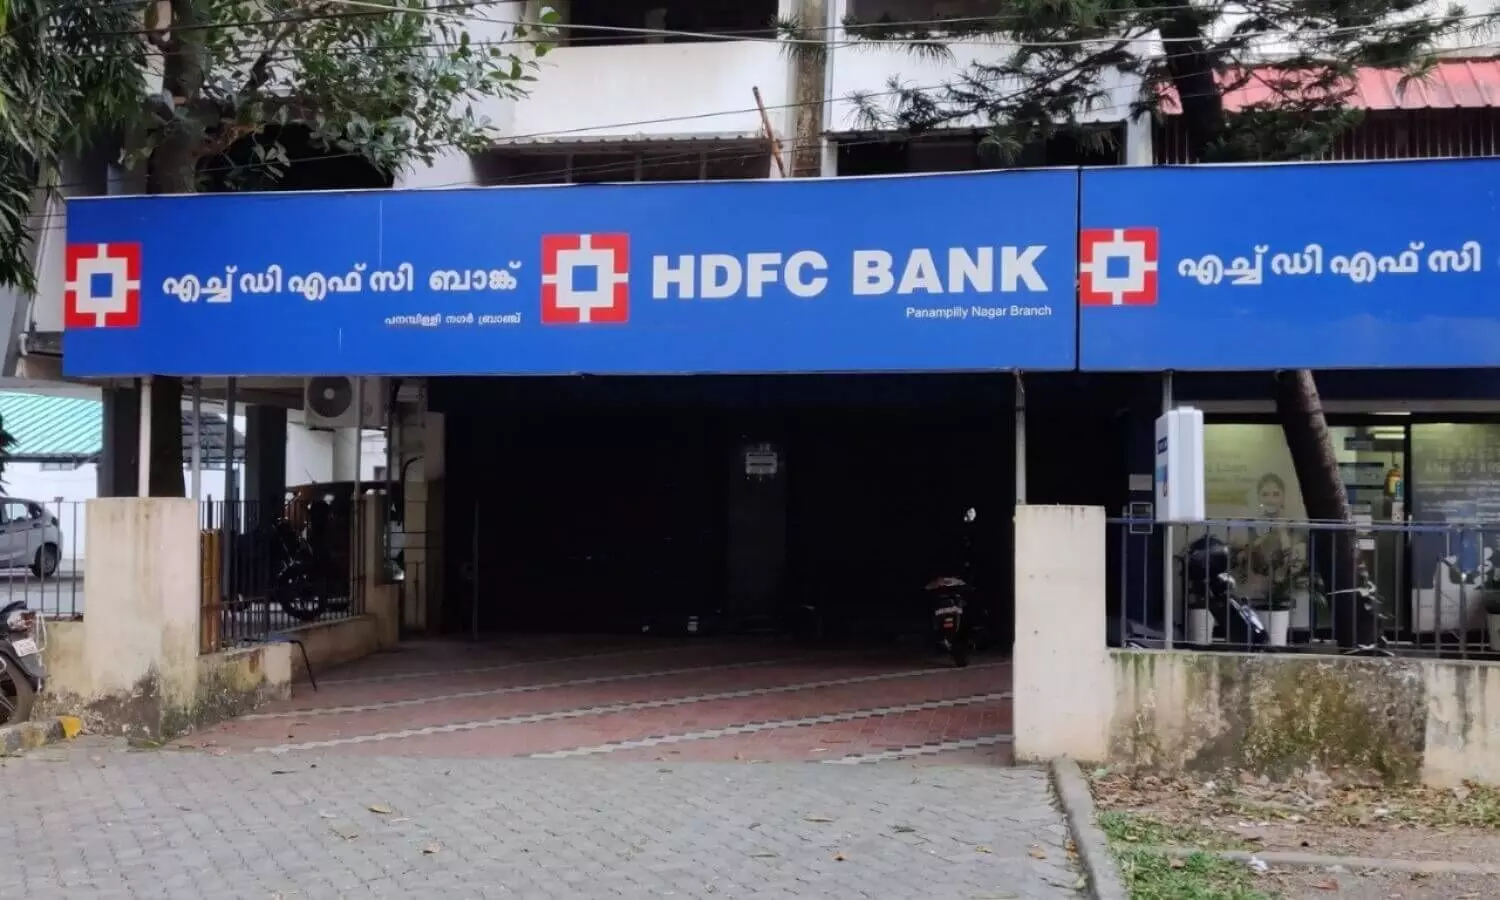 HDFC Bank Panampilly Nagar, Kochi branch